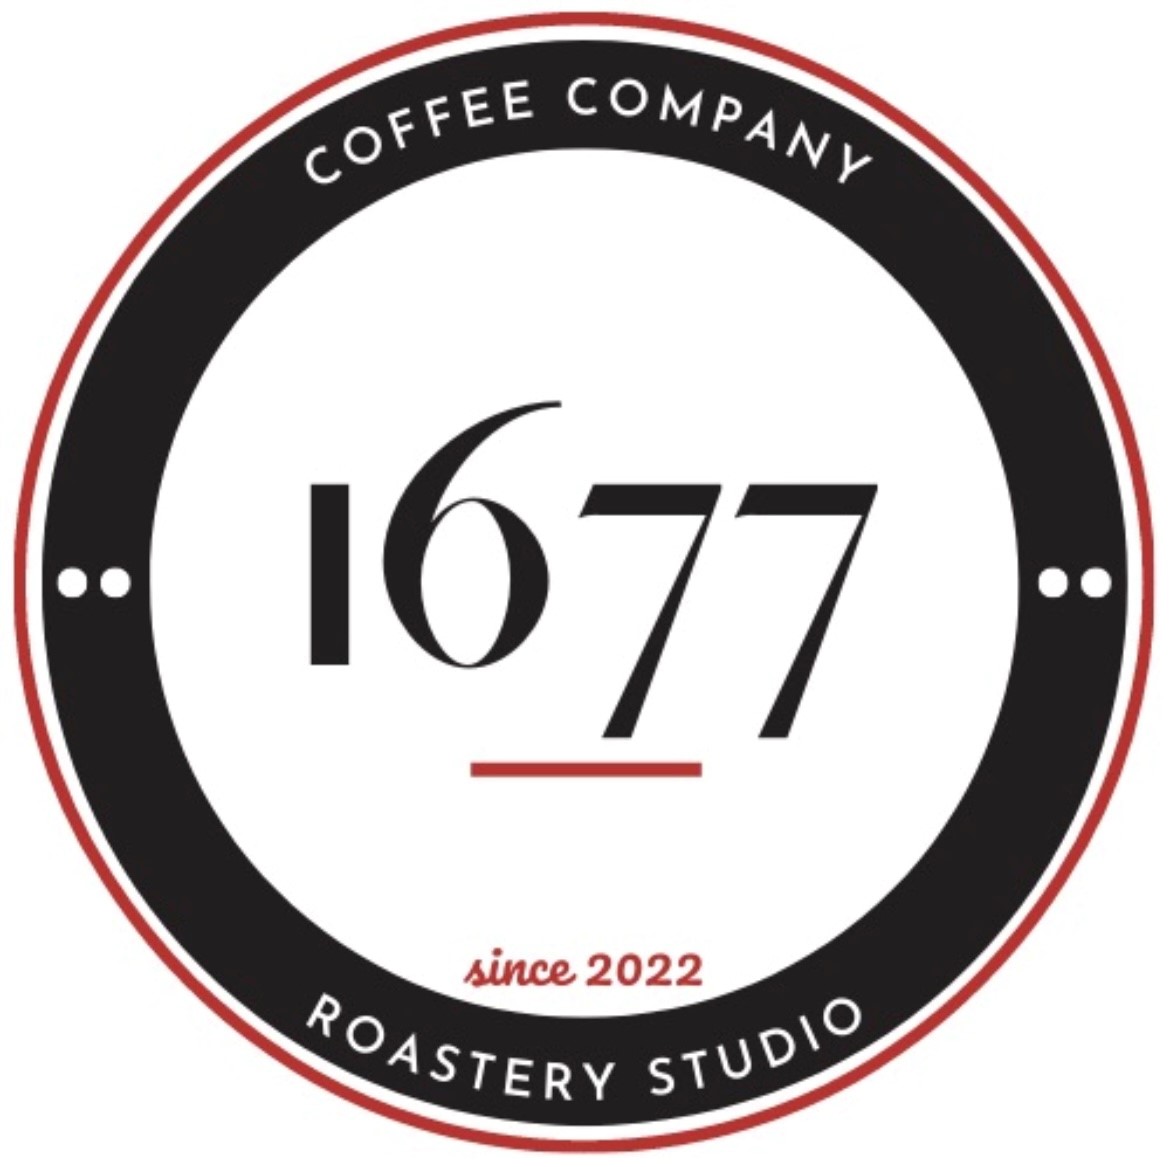 1677 Coffee Co